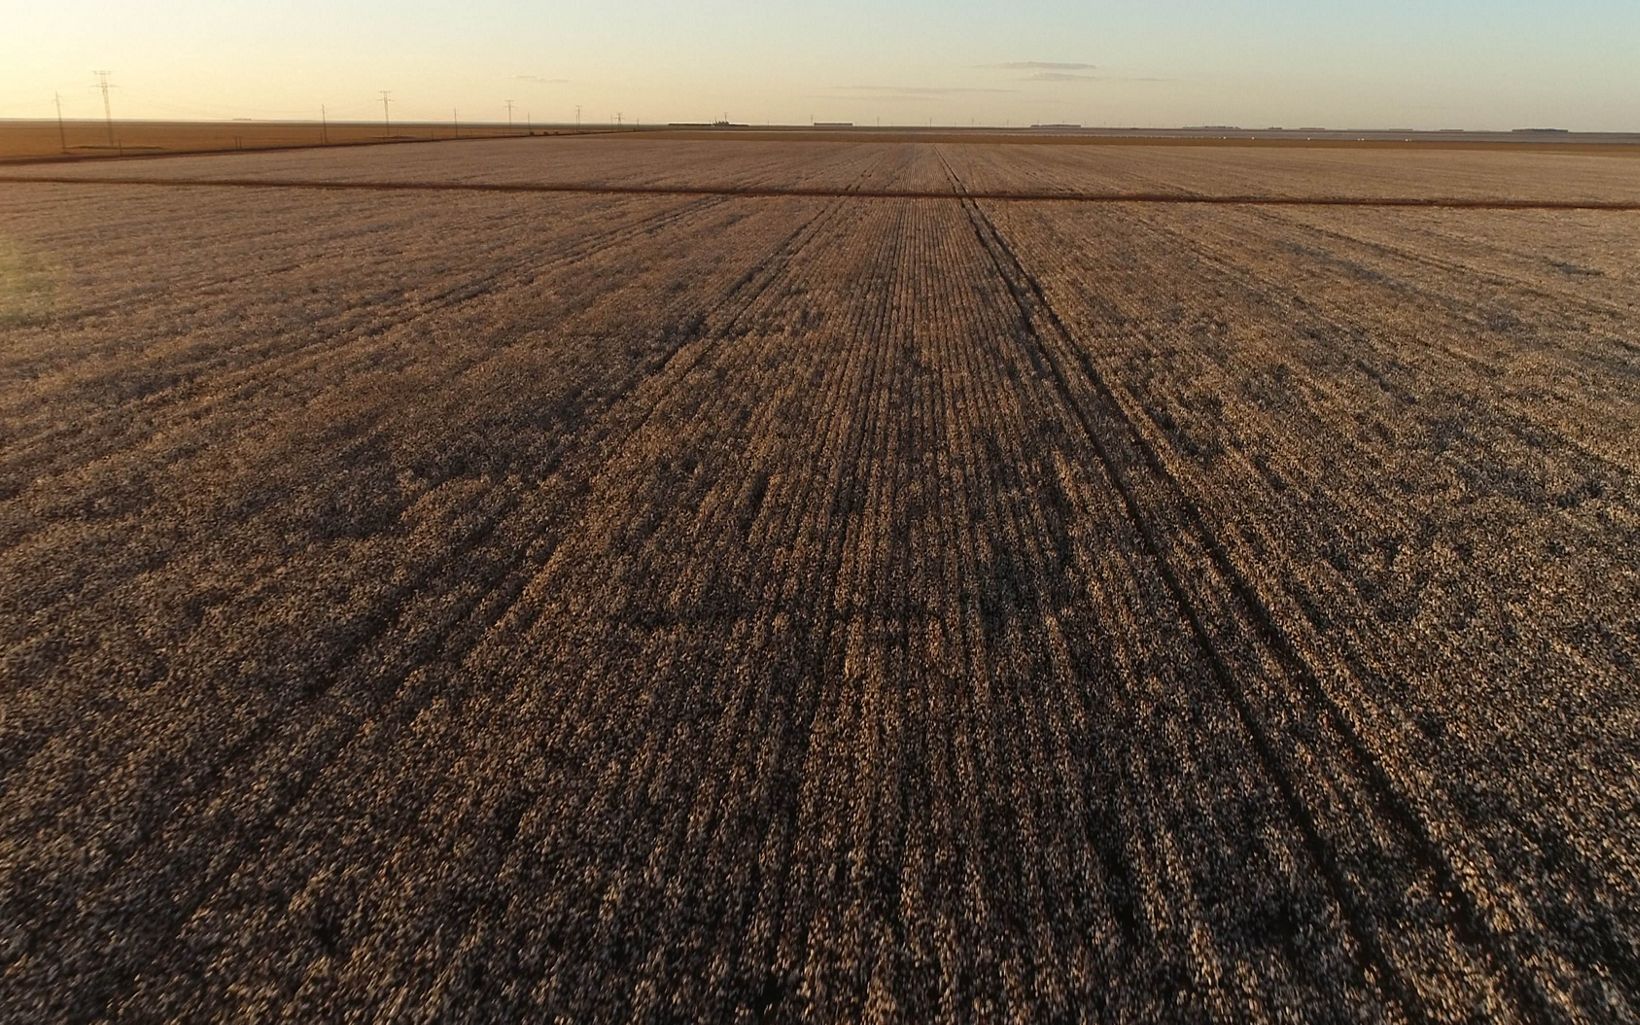 Agricultura em expansão As terras planas do cerrado tem sido usadas frequentemente para a expansão da agricultura, especialmente no cultivo de grãos. © Ludus Videos